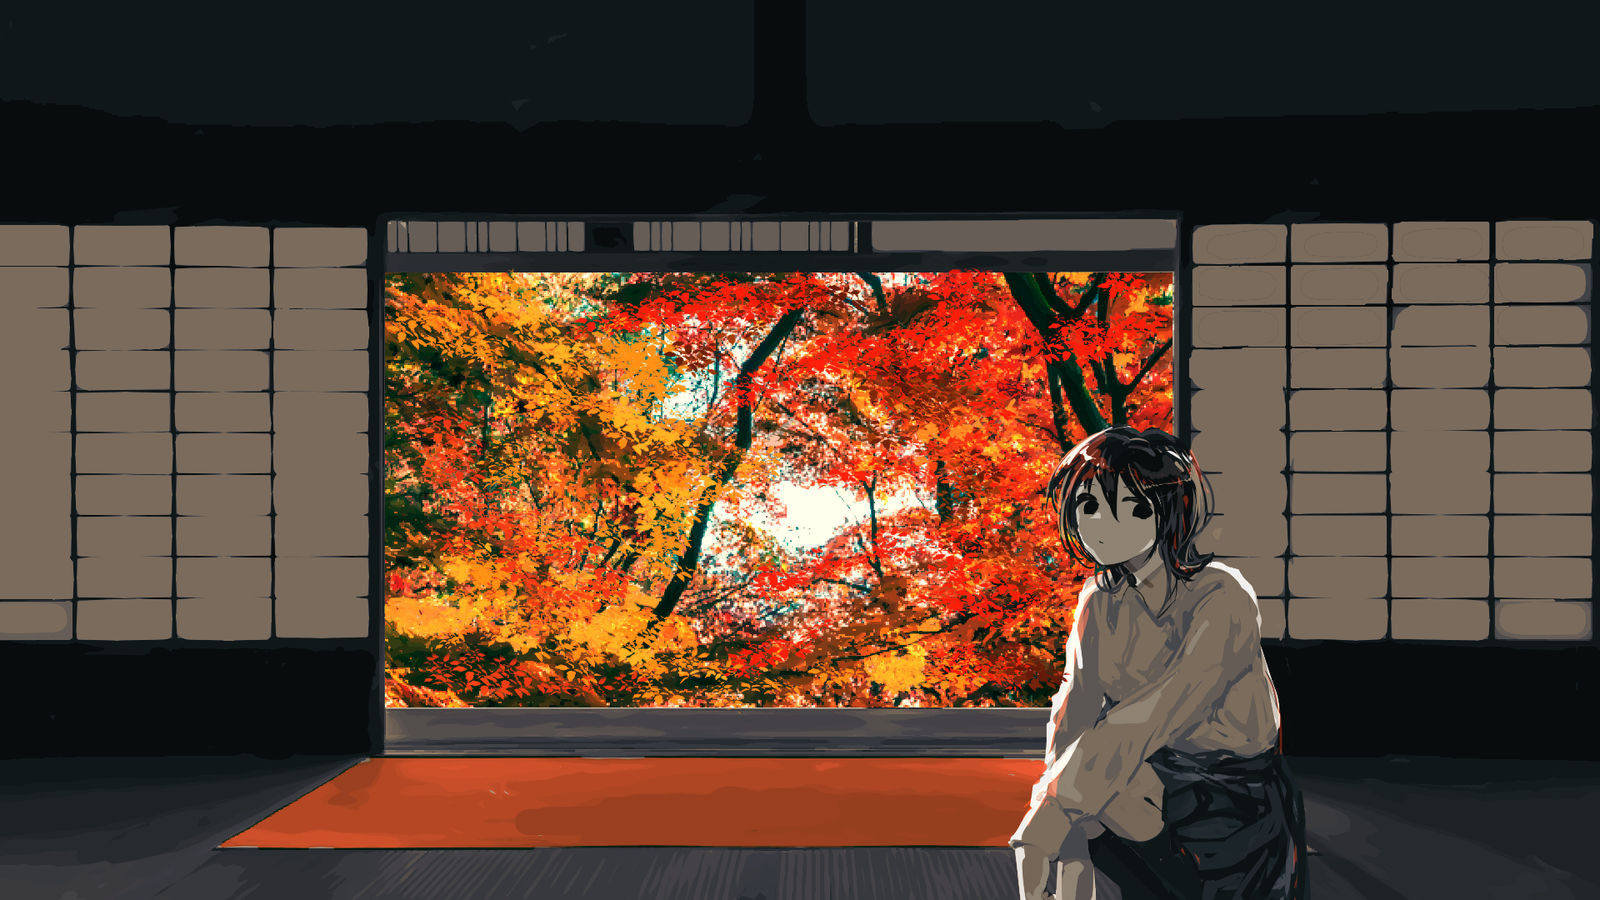 秋天的窗户插画图片壁纸